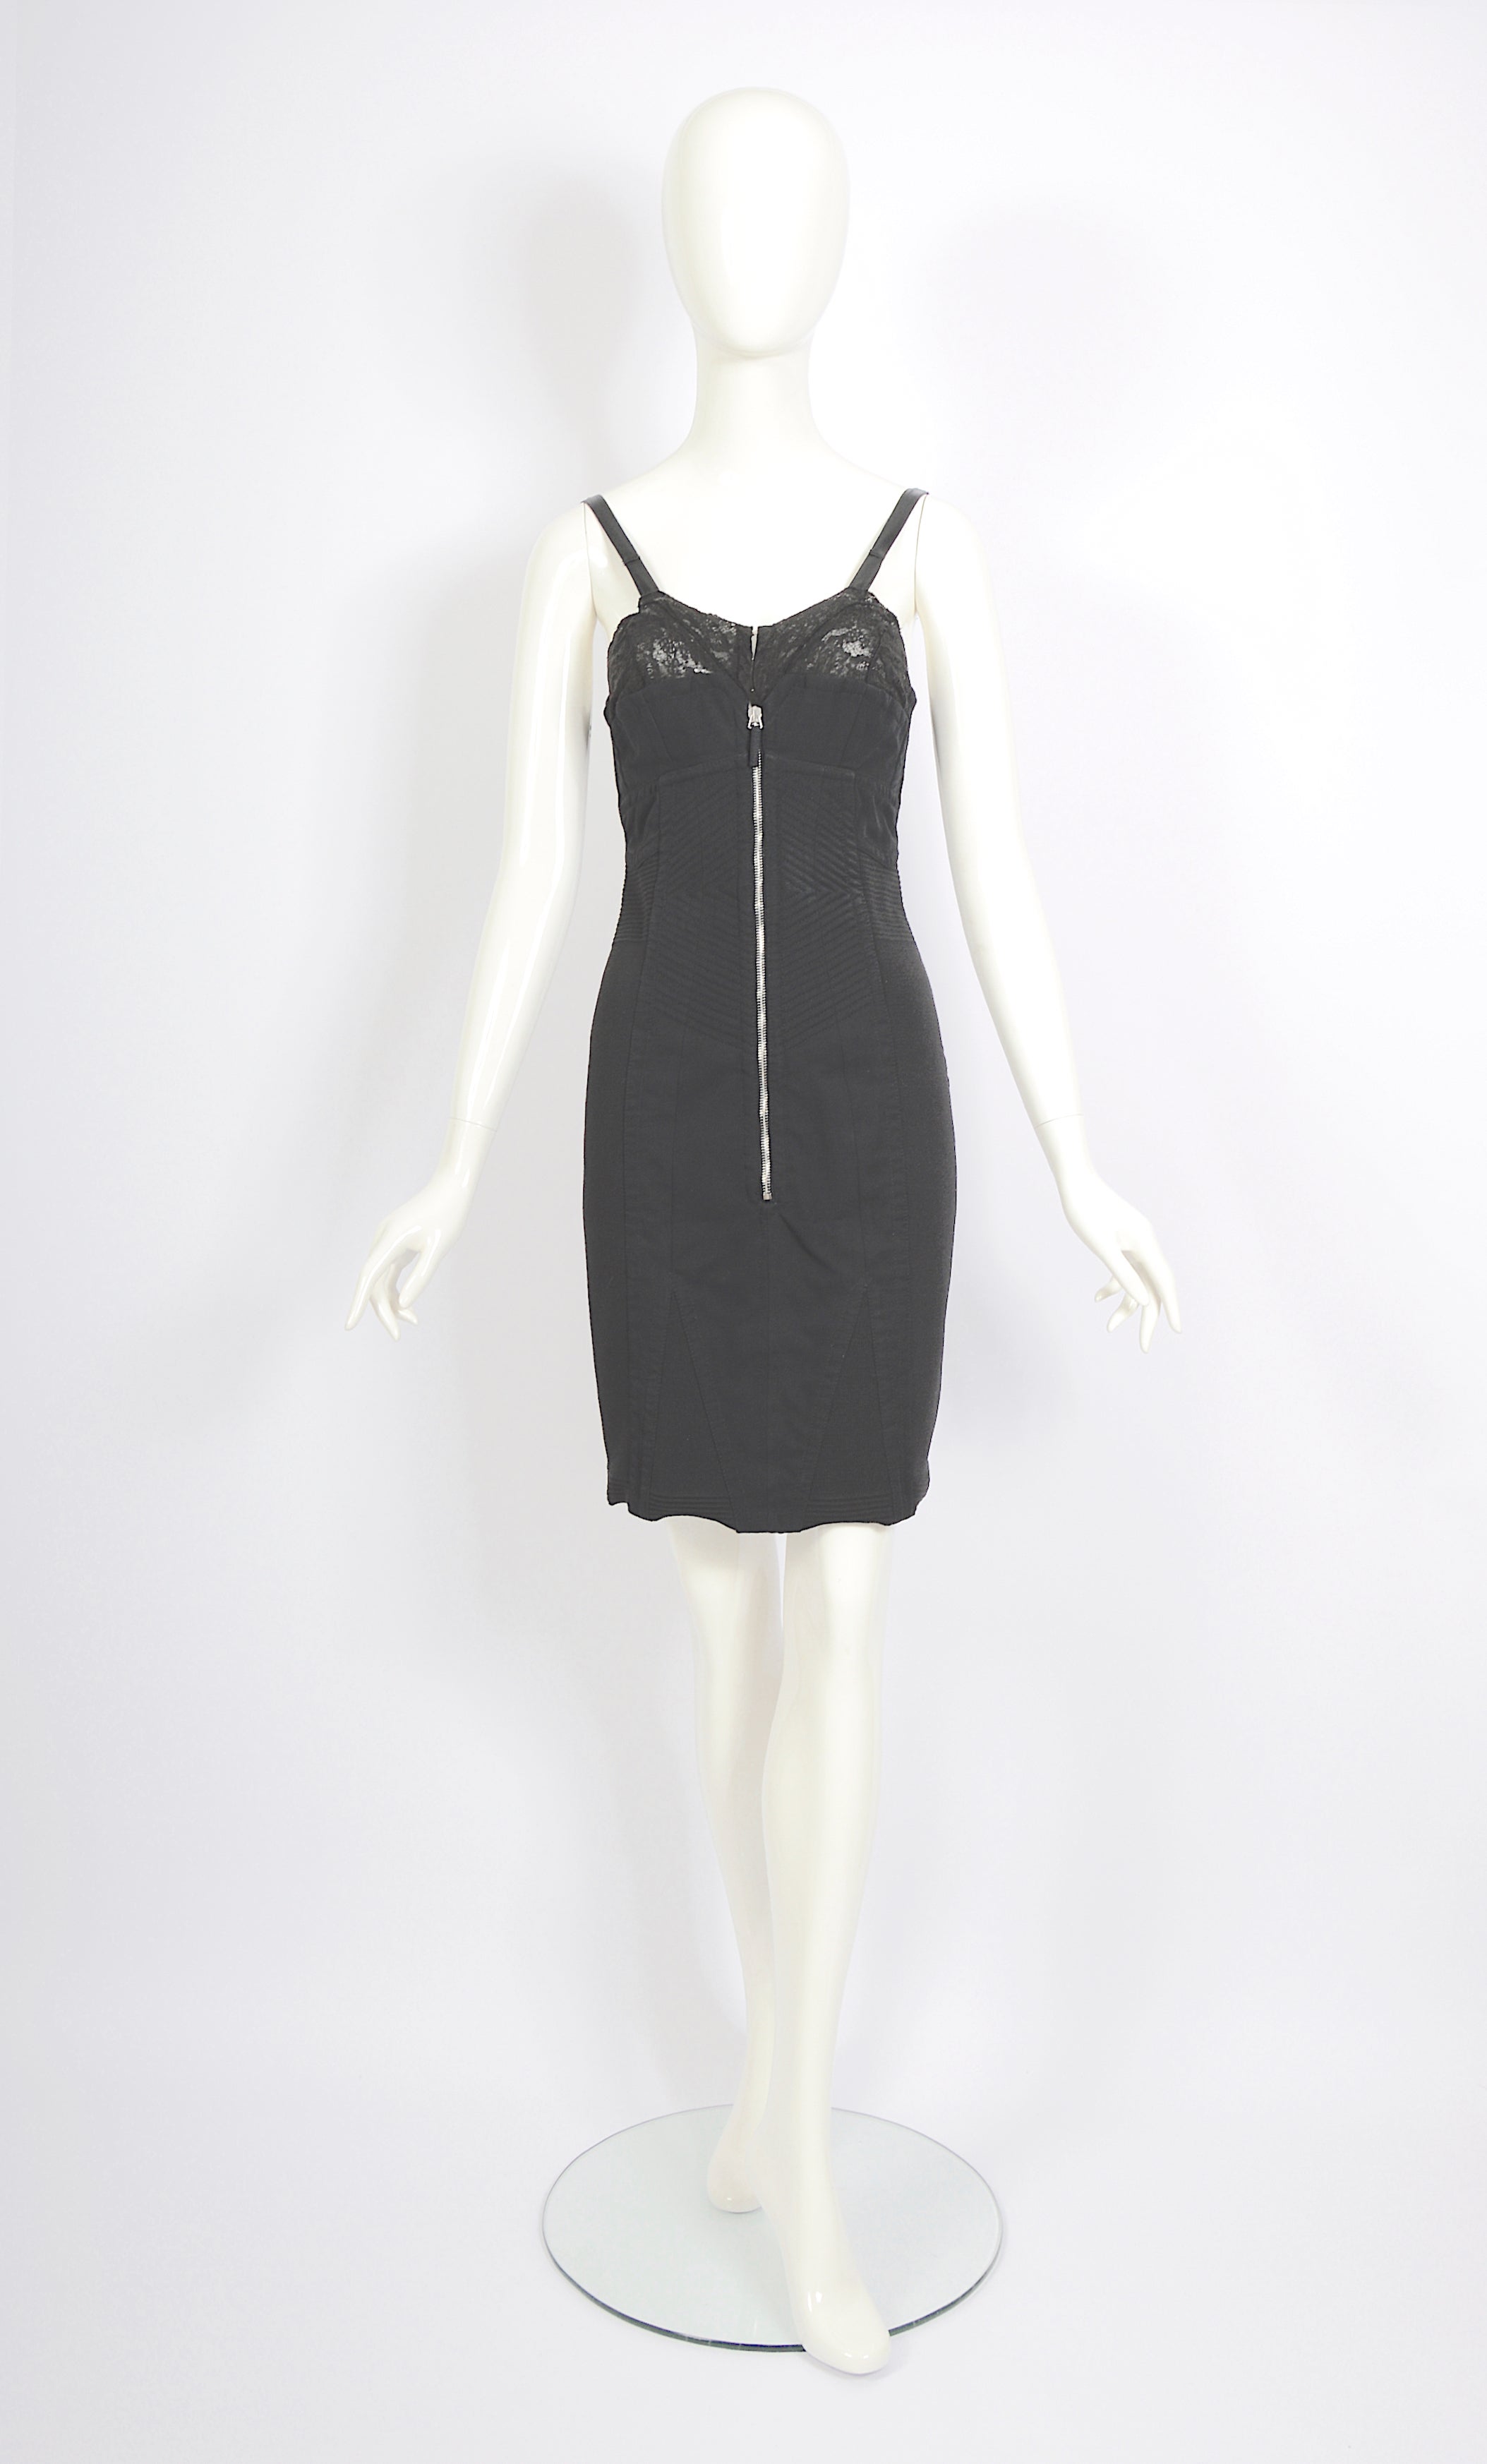 Women's Jean Paul Gaultier 1990s vintage Important lingerie style corset bra black dress For Sale